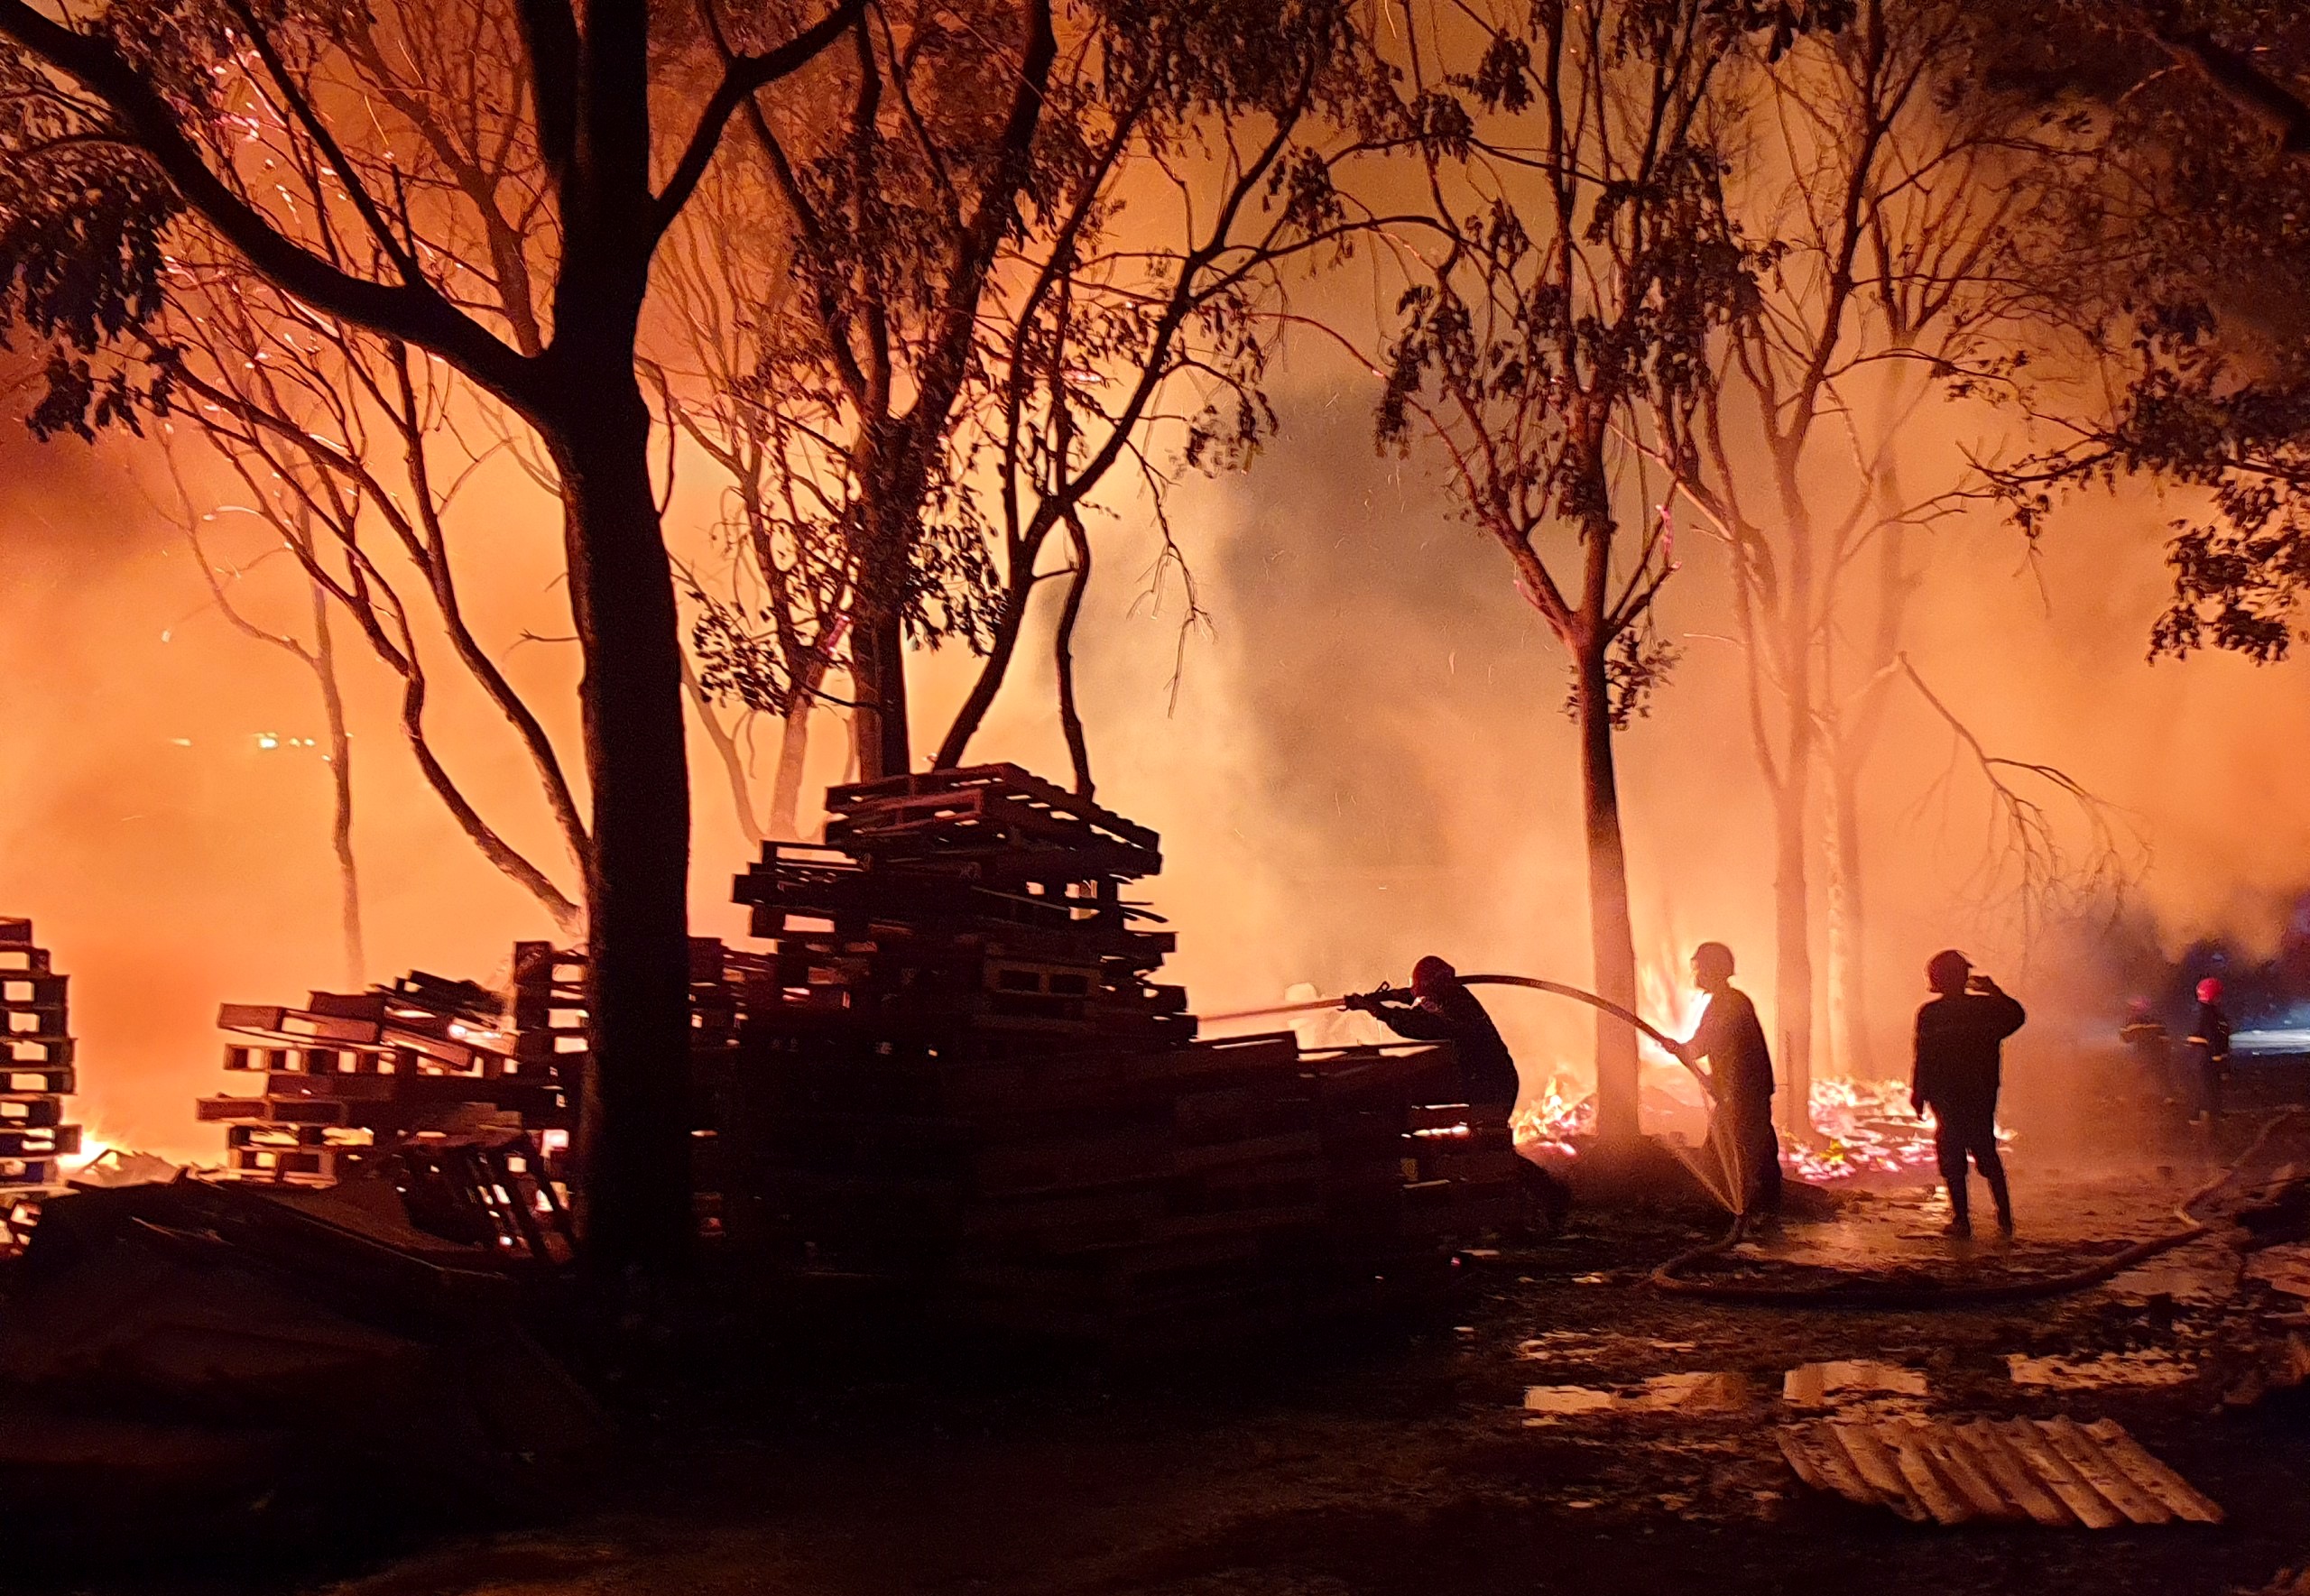 Cơ sở pallet cháy dữ dội trong đêm, gần 1.000m2 nhà xưởng đổ sập - Ảnh 3.